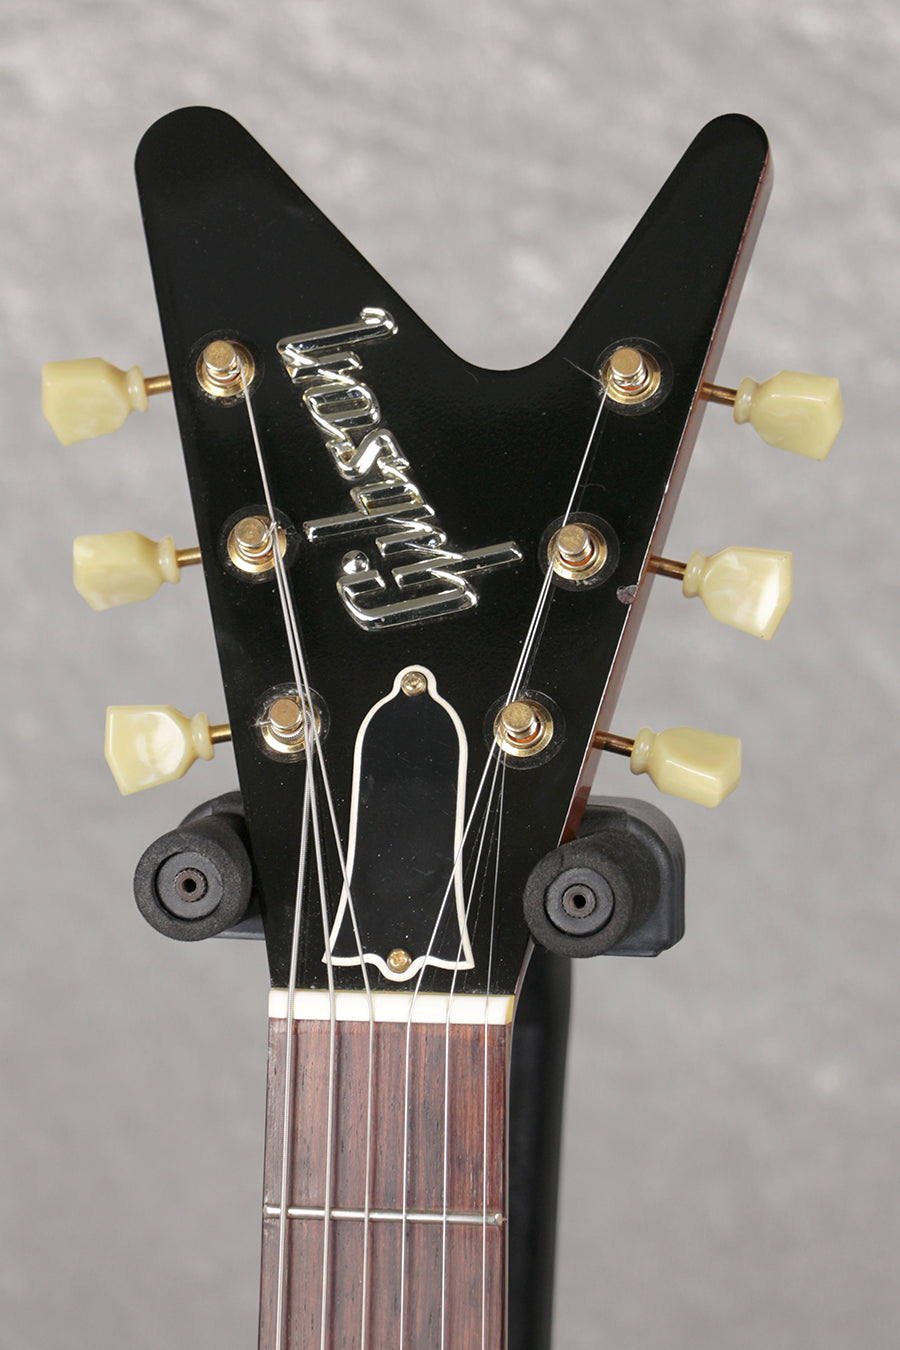 [SN 9913] USED Gibson Custom / 1957 Futura Mahogany [06]